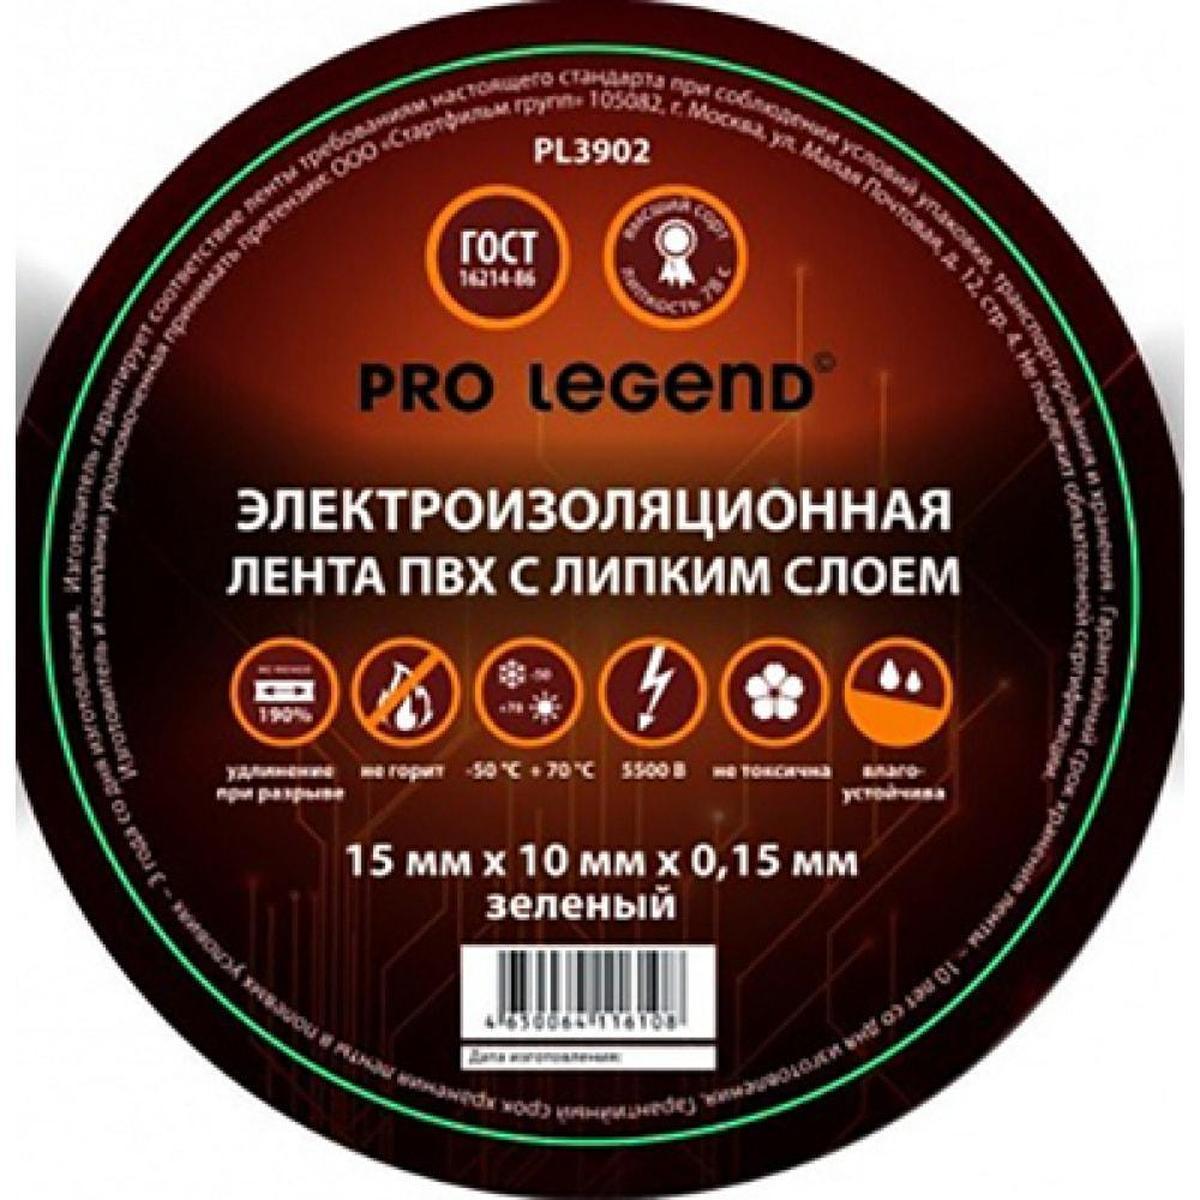 PL3905, Изолента Pro Legend 15/10 черный